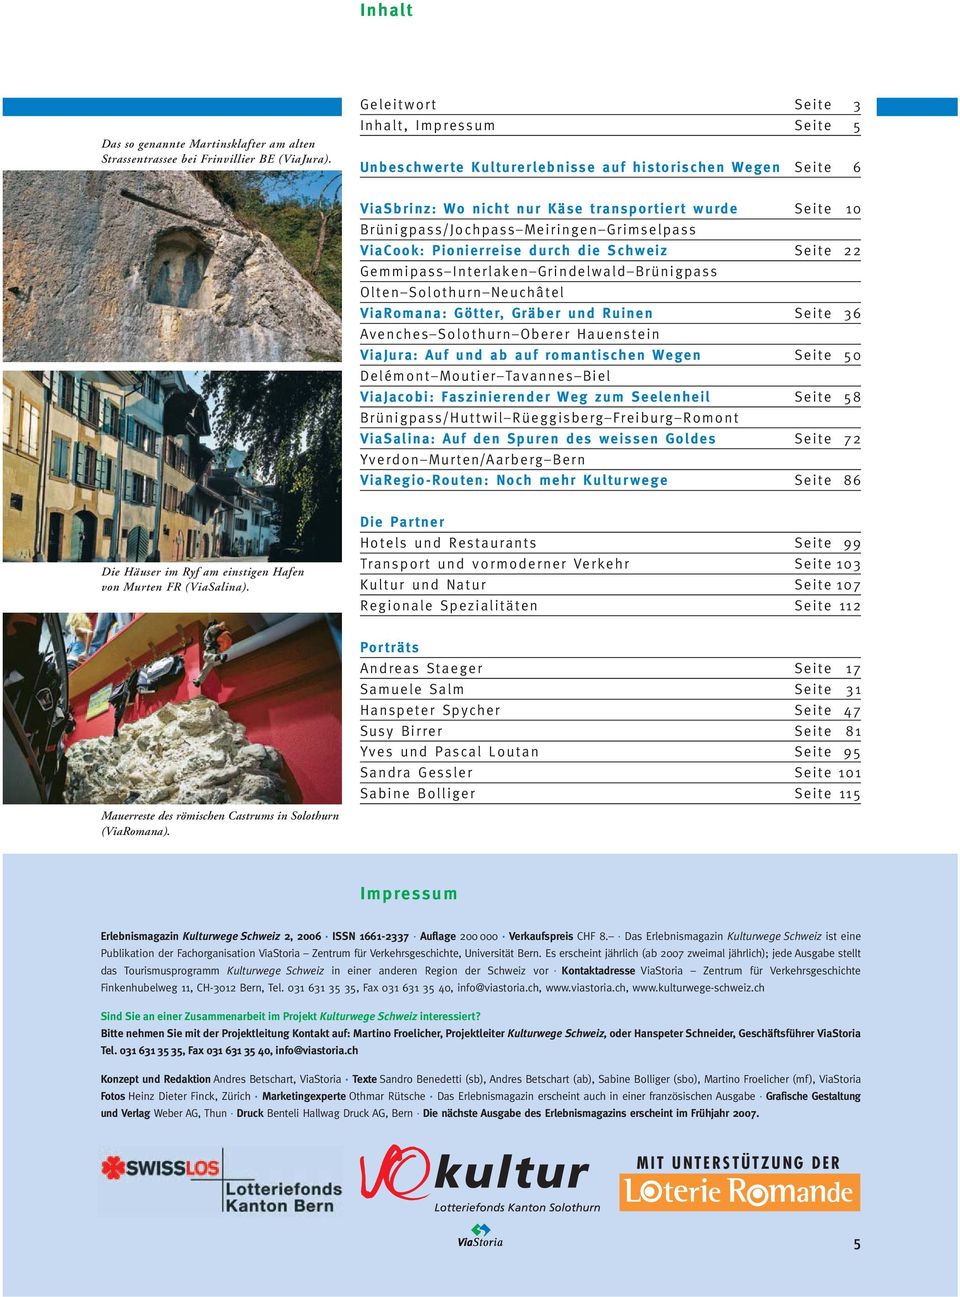 Grimselpass ViaCook: Pionierreise durch die Schweiz Seite 22 Gemmipass Interlaken Grindelwald Brünigpass Olten Solothurn Neuchâtel ViaRomana: Götter, Gräber und Ruinen Seite 36 Avenches Solothurn